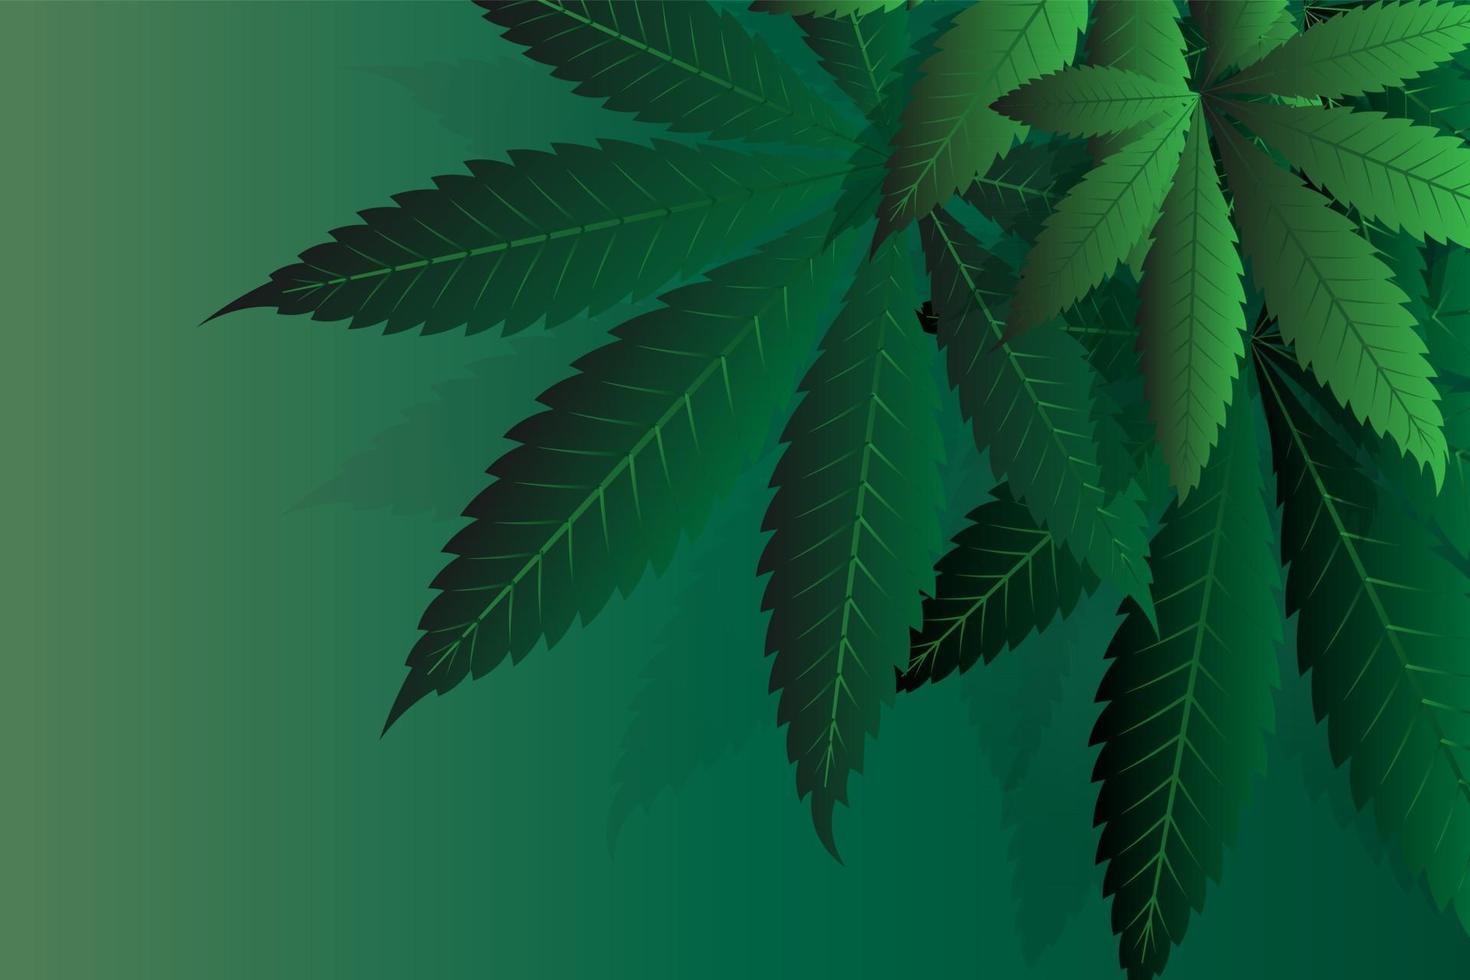 Cannabisblätter einer Pflanze auf einem dunklen Hintergrund vektor